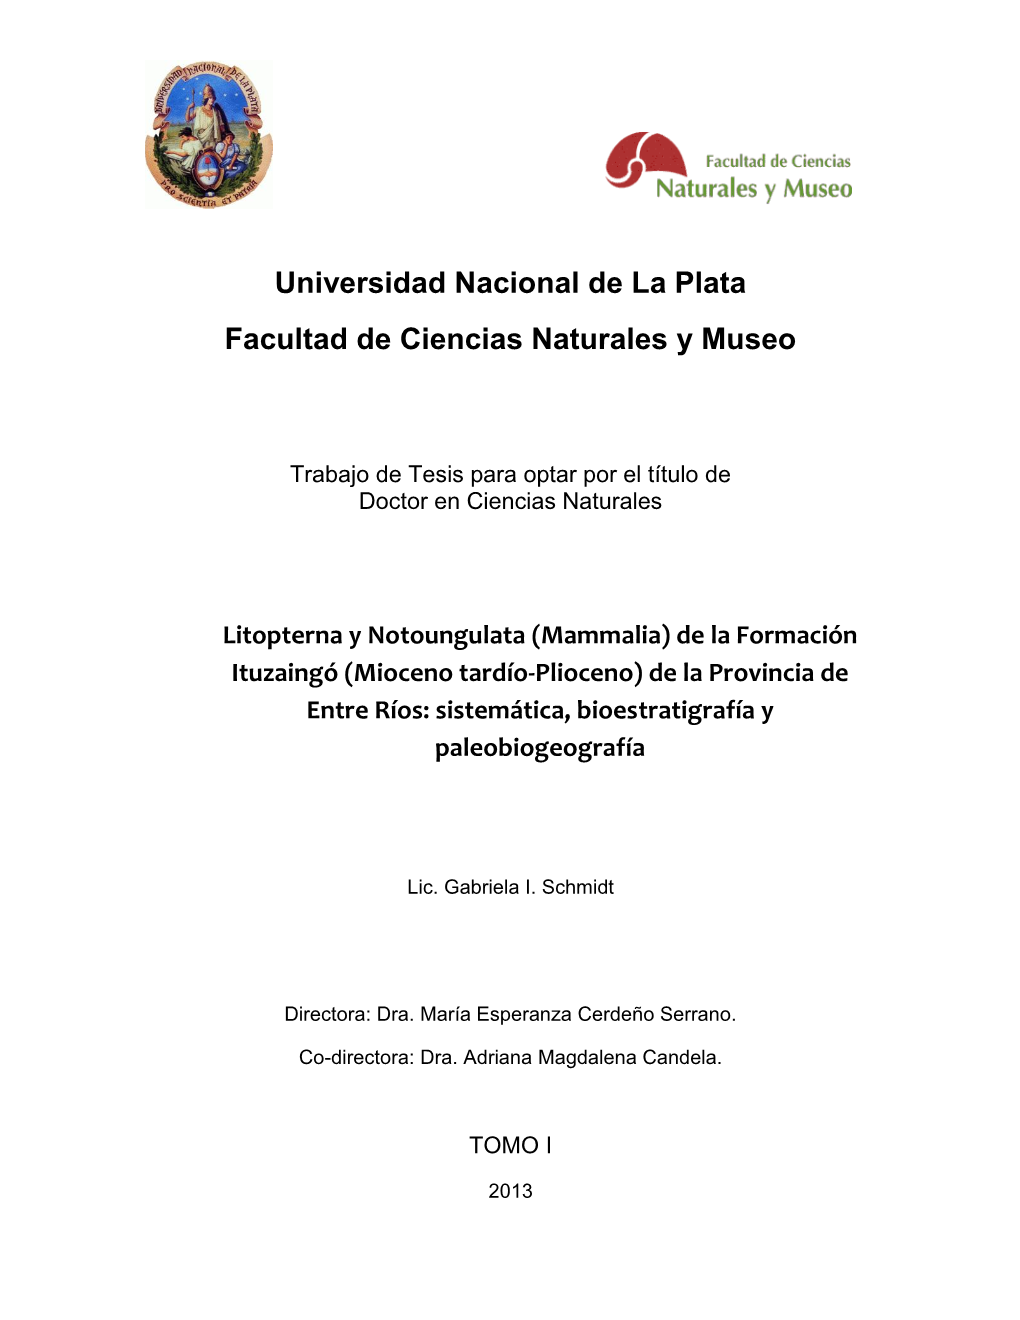 Universidad Nacional De La Plata Facultad De Ciencias Naturales Y Museo